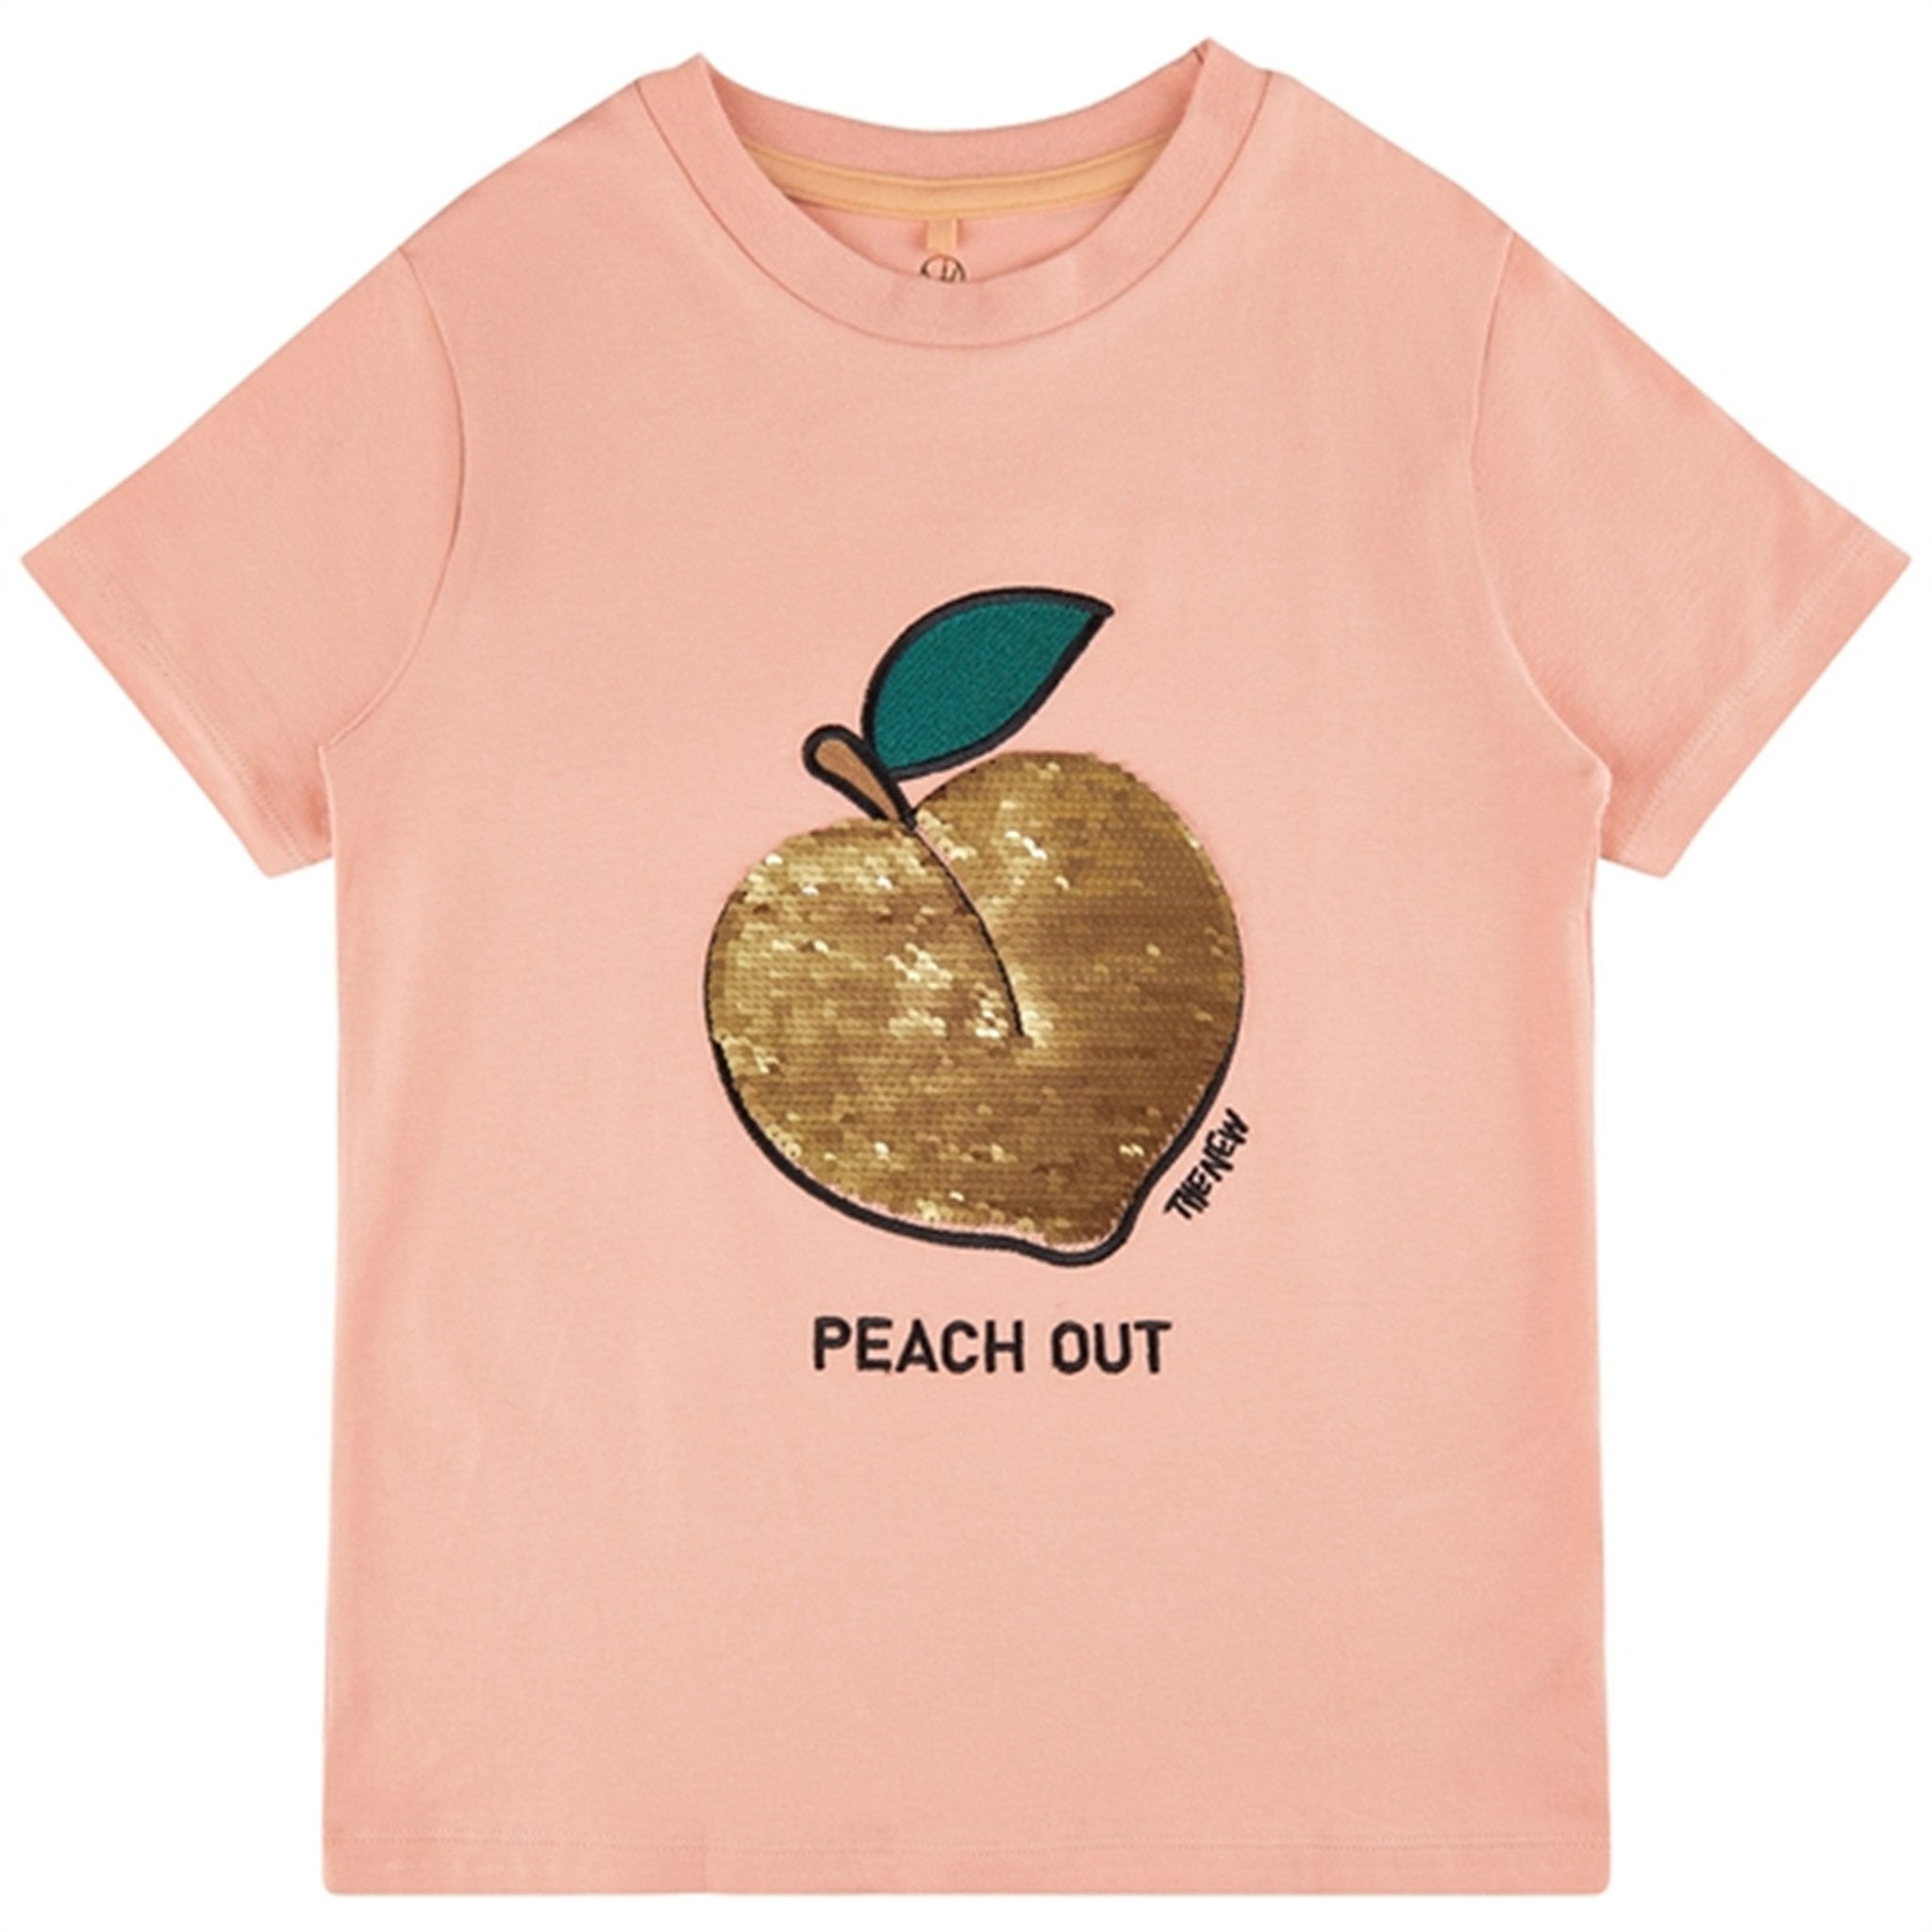 THE NEW Peach Beige Feach T-shirt 2